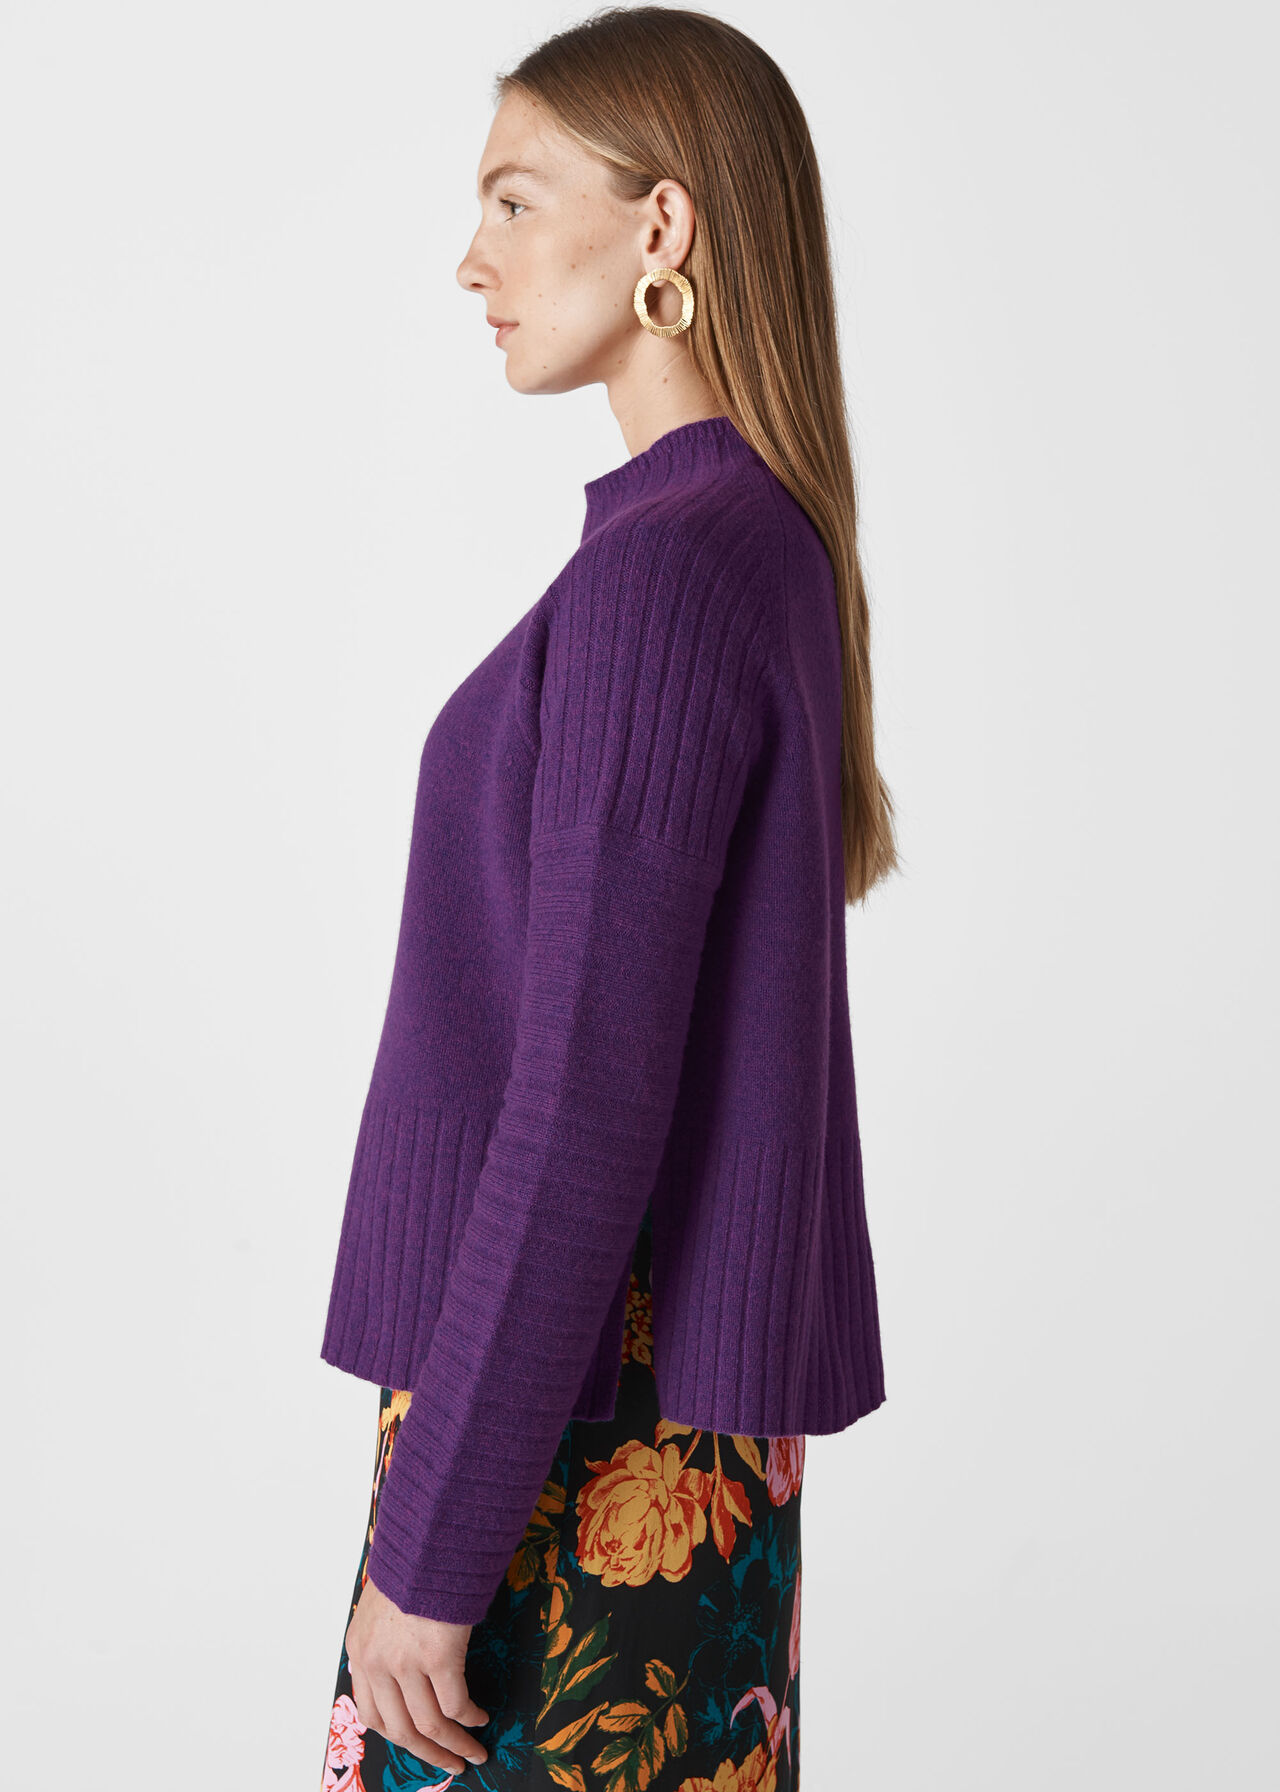 Rib Detail Wool Knit Purple